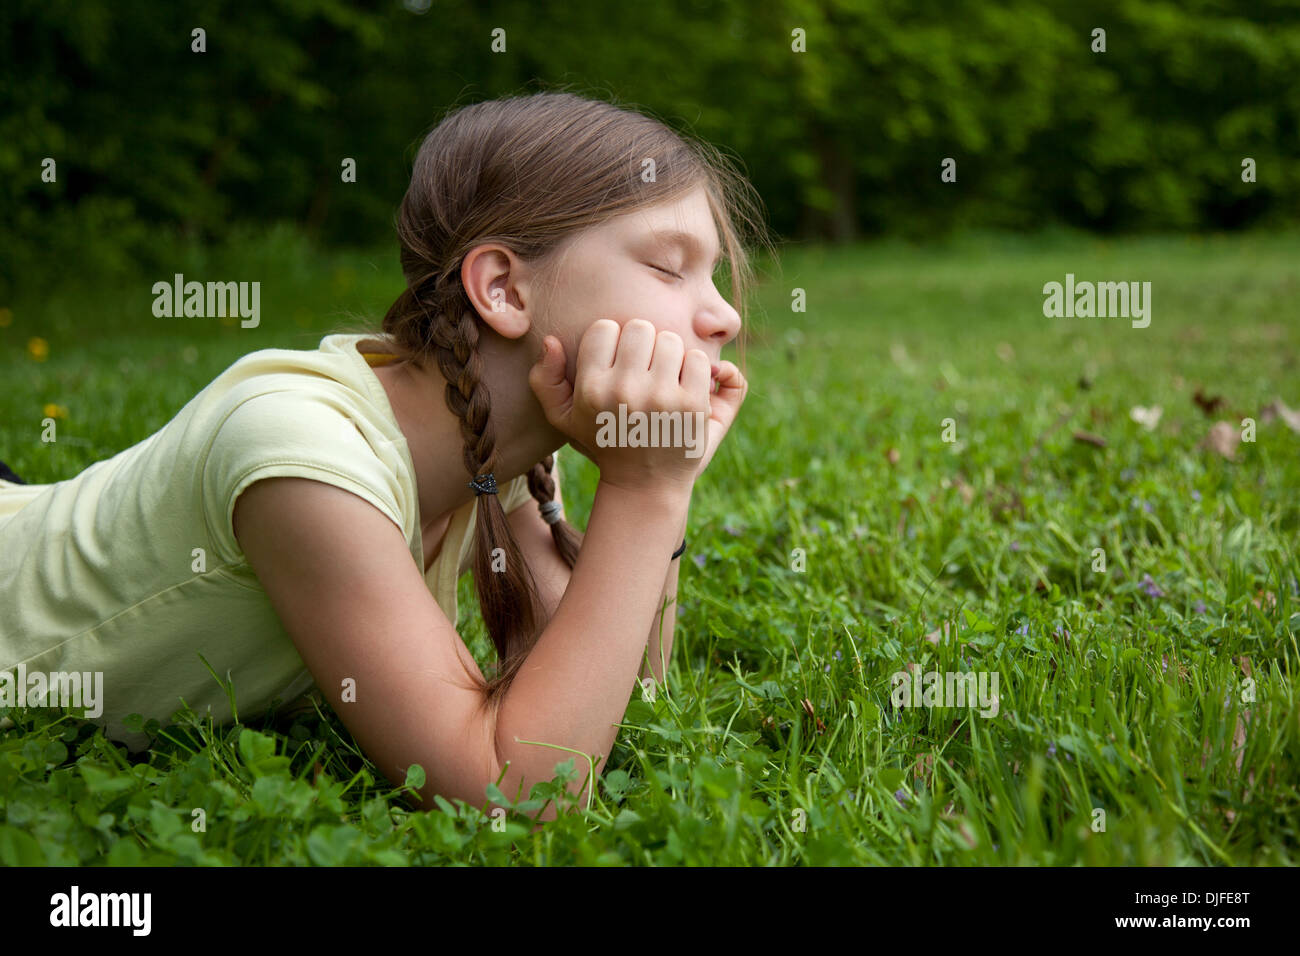 Porträt eines Mädchens in einem Park auf einer grünen Wiese denken Stockfoto